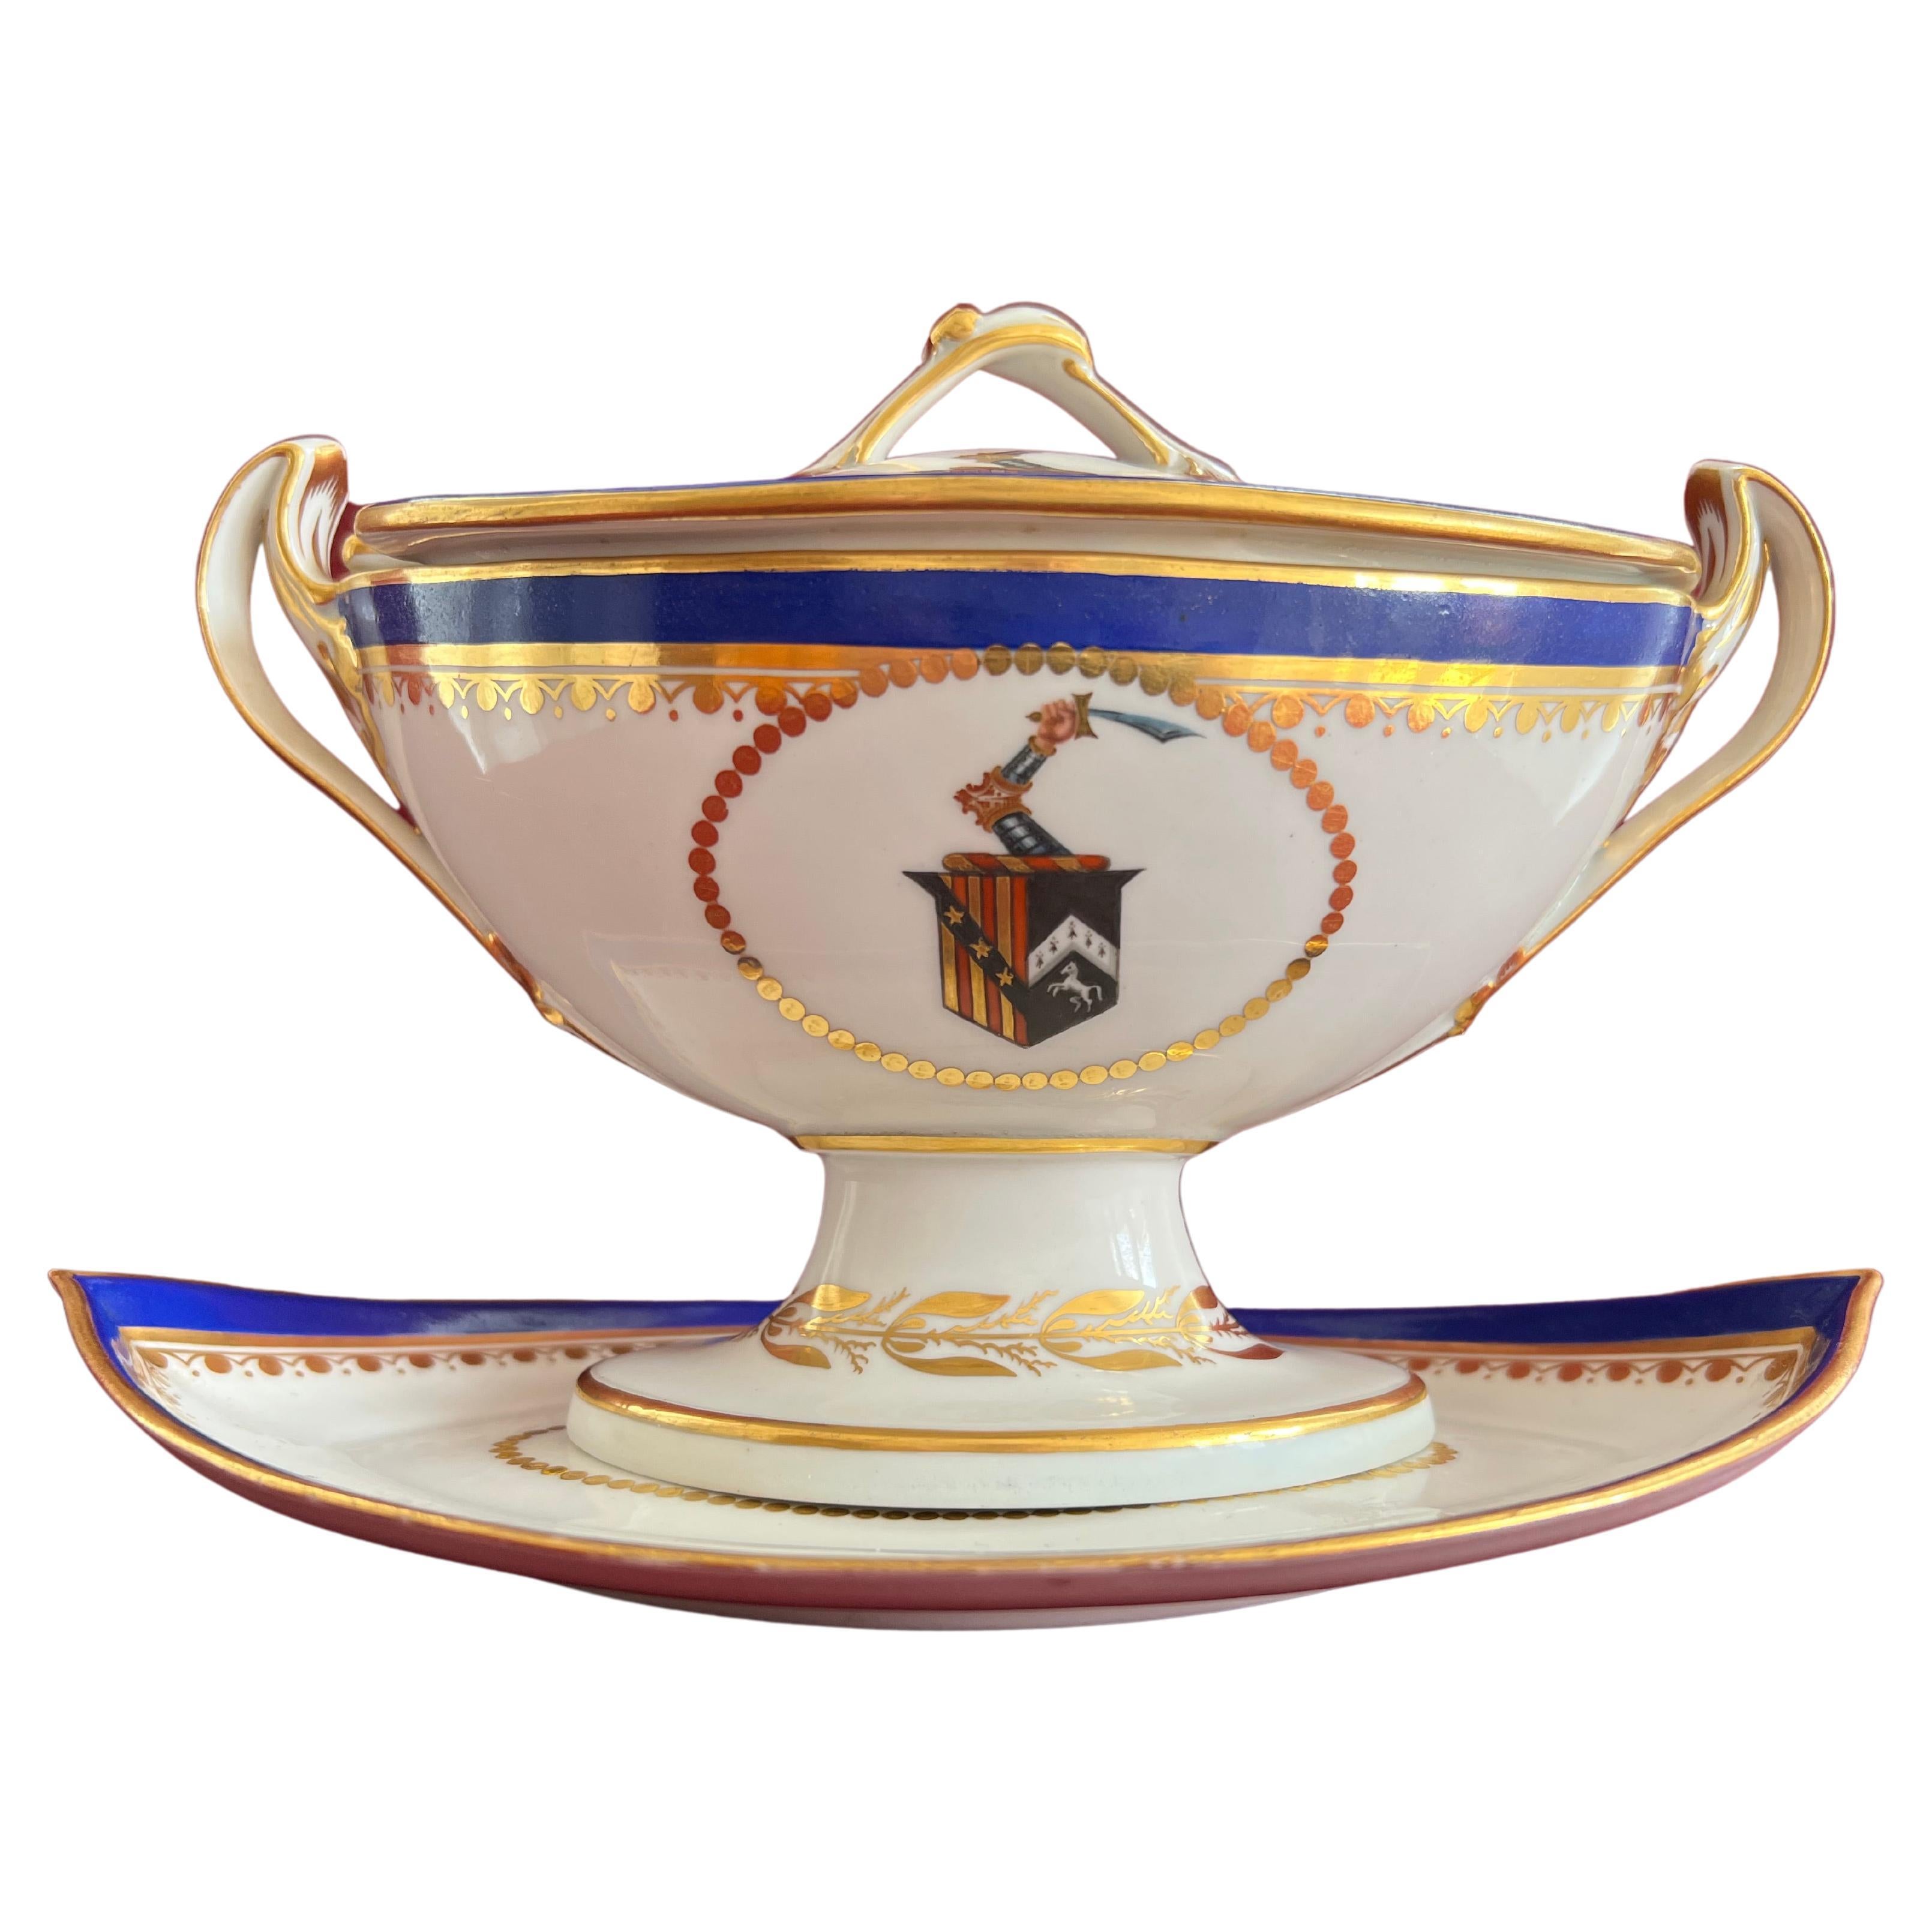 Fine Derby Porcelain Armorial Sauce Tureen C.1790